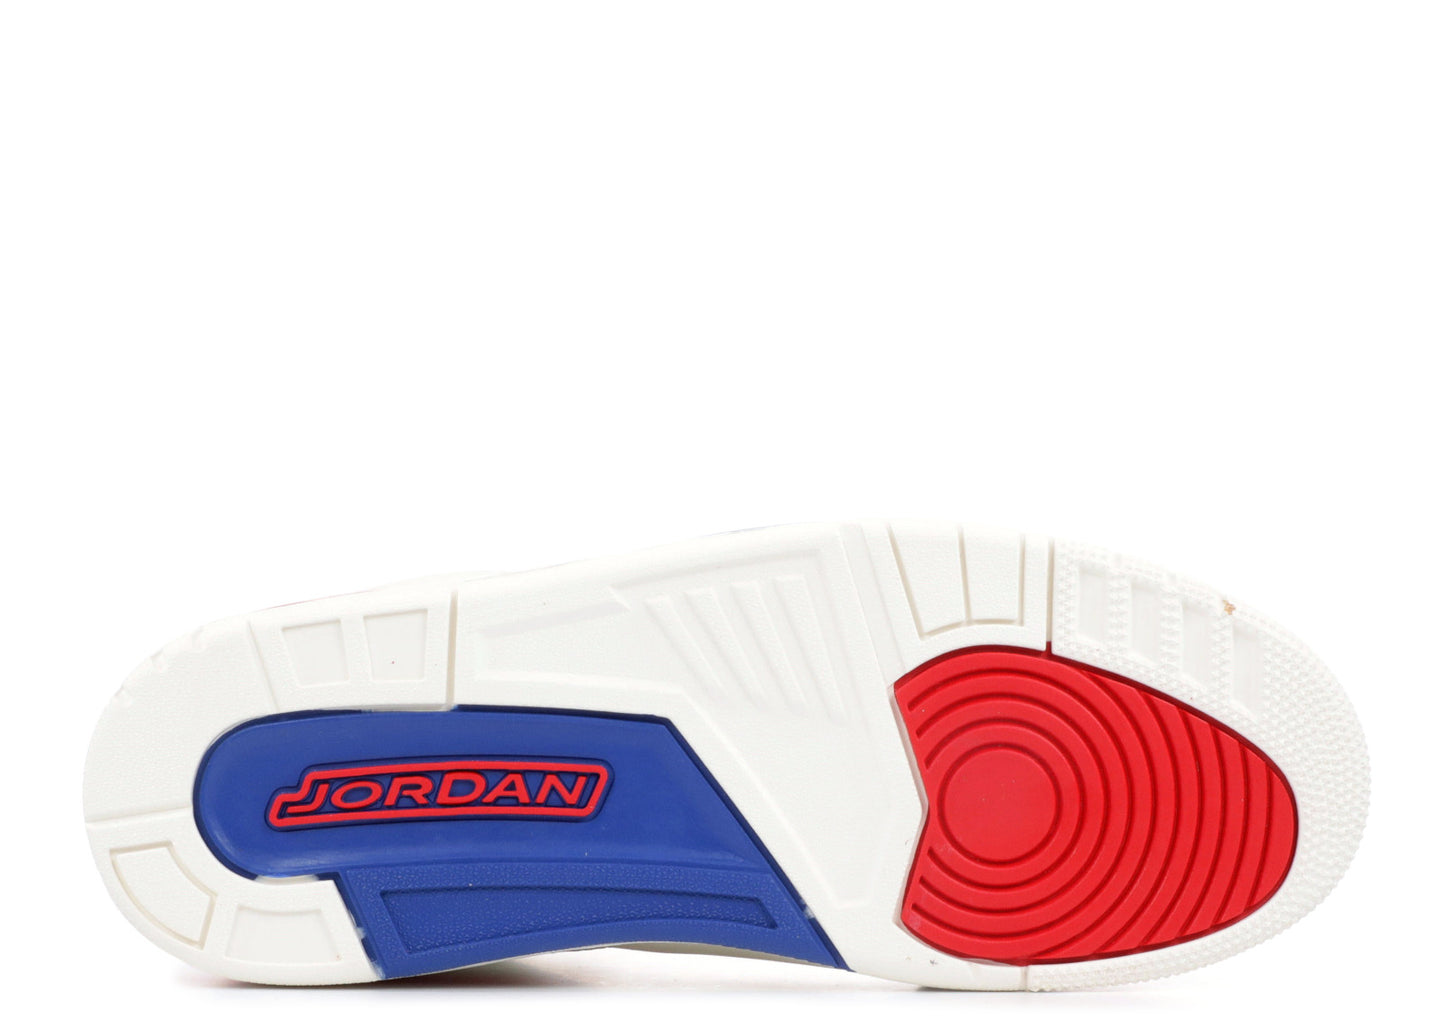 Air Jordan 3 Retro "Charity Game"